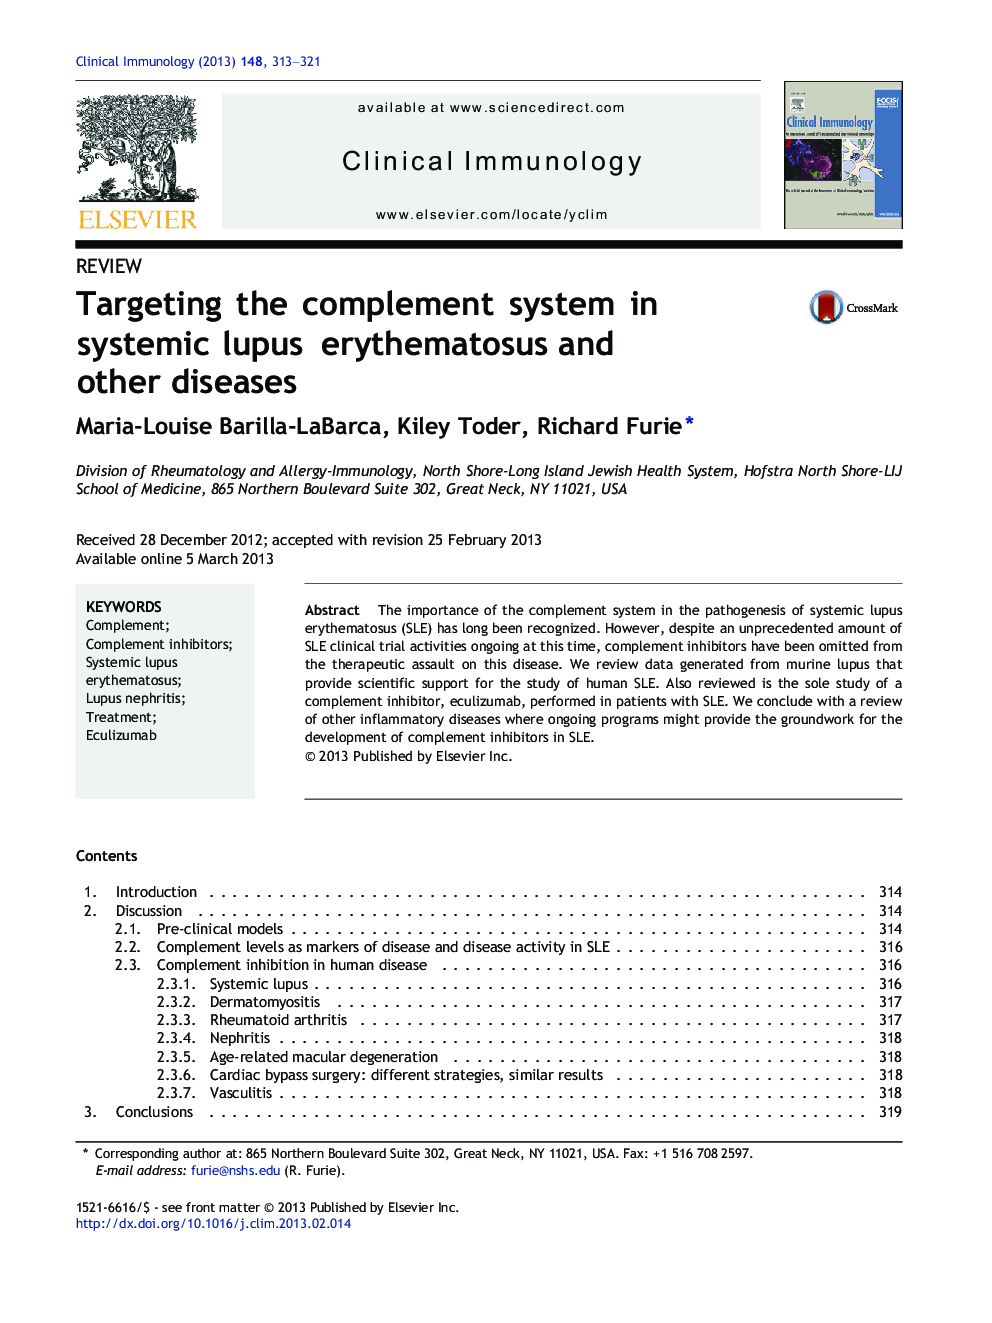 بررسی سیستم تکمیلی در لوپوس اریتماتو سیستمیک و سایر بیماری ها 